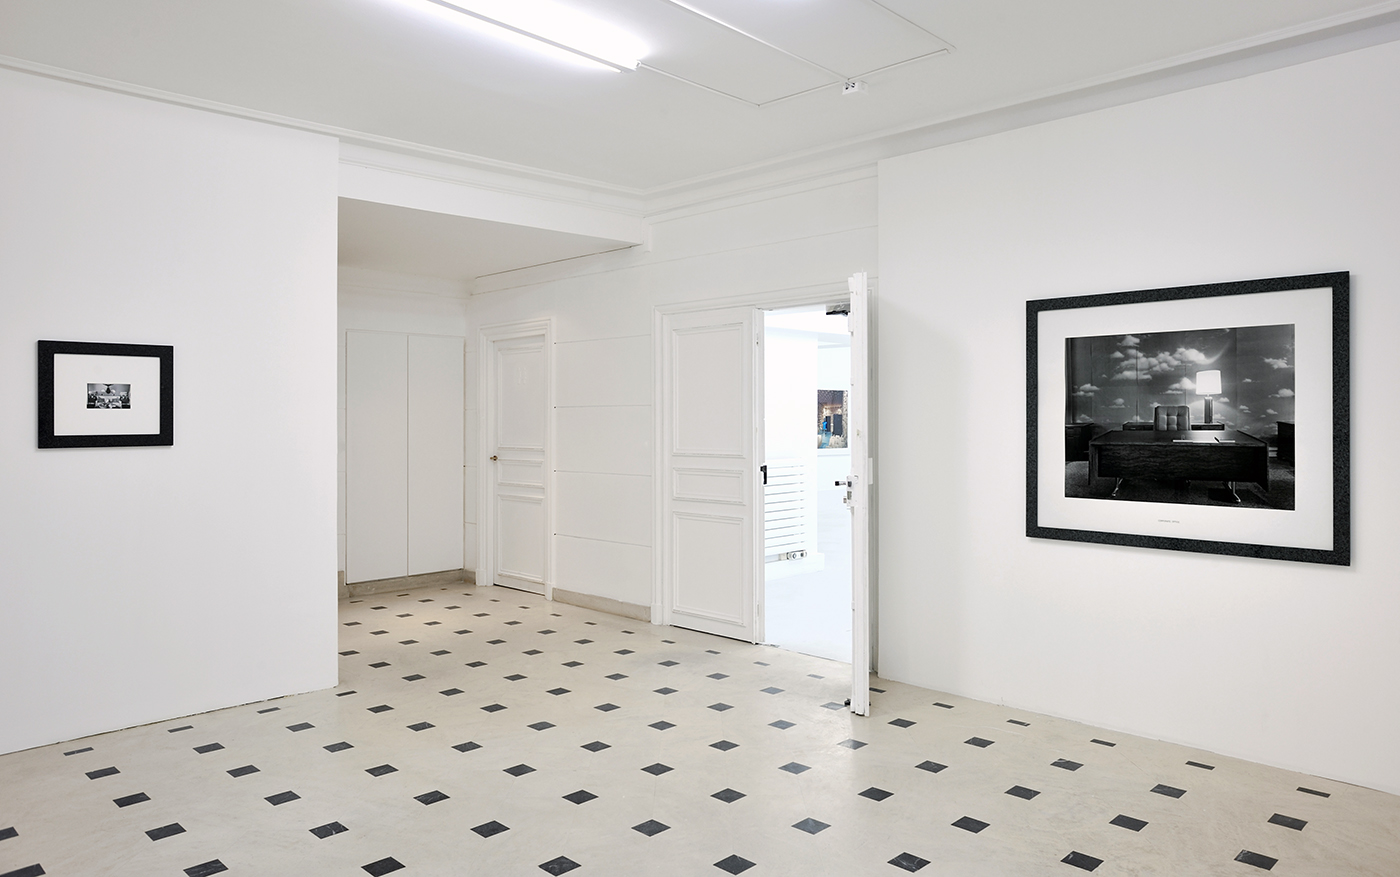 Exhibition view - Un hommage - Galerie in situ - Fabienne Leclerc, Paris, 2015